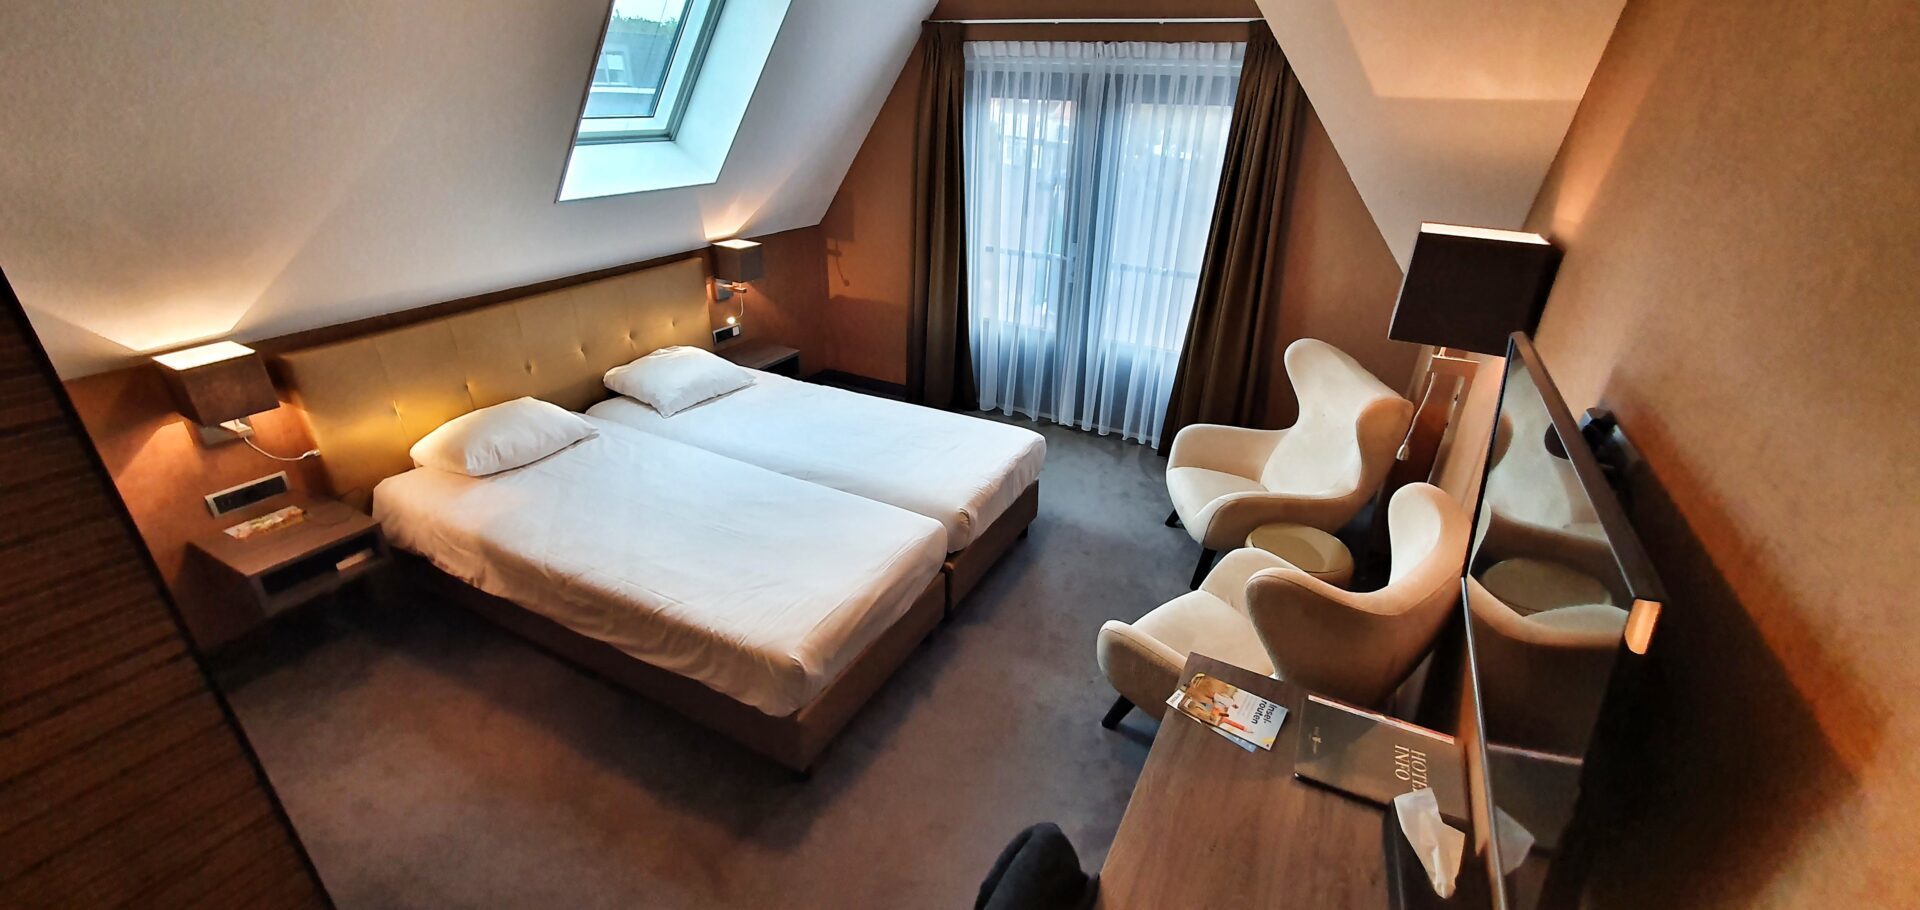 Deluxe-Zimmer im Hotel De Lindeboom auf Texel, Niederlande.